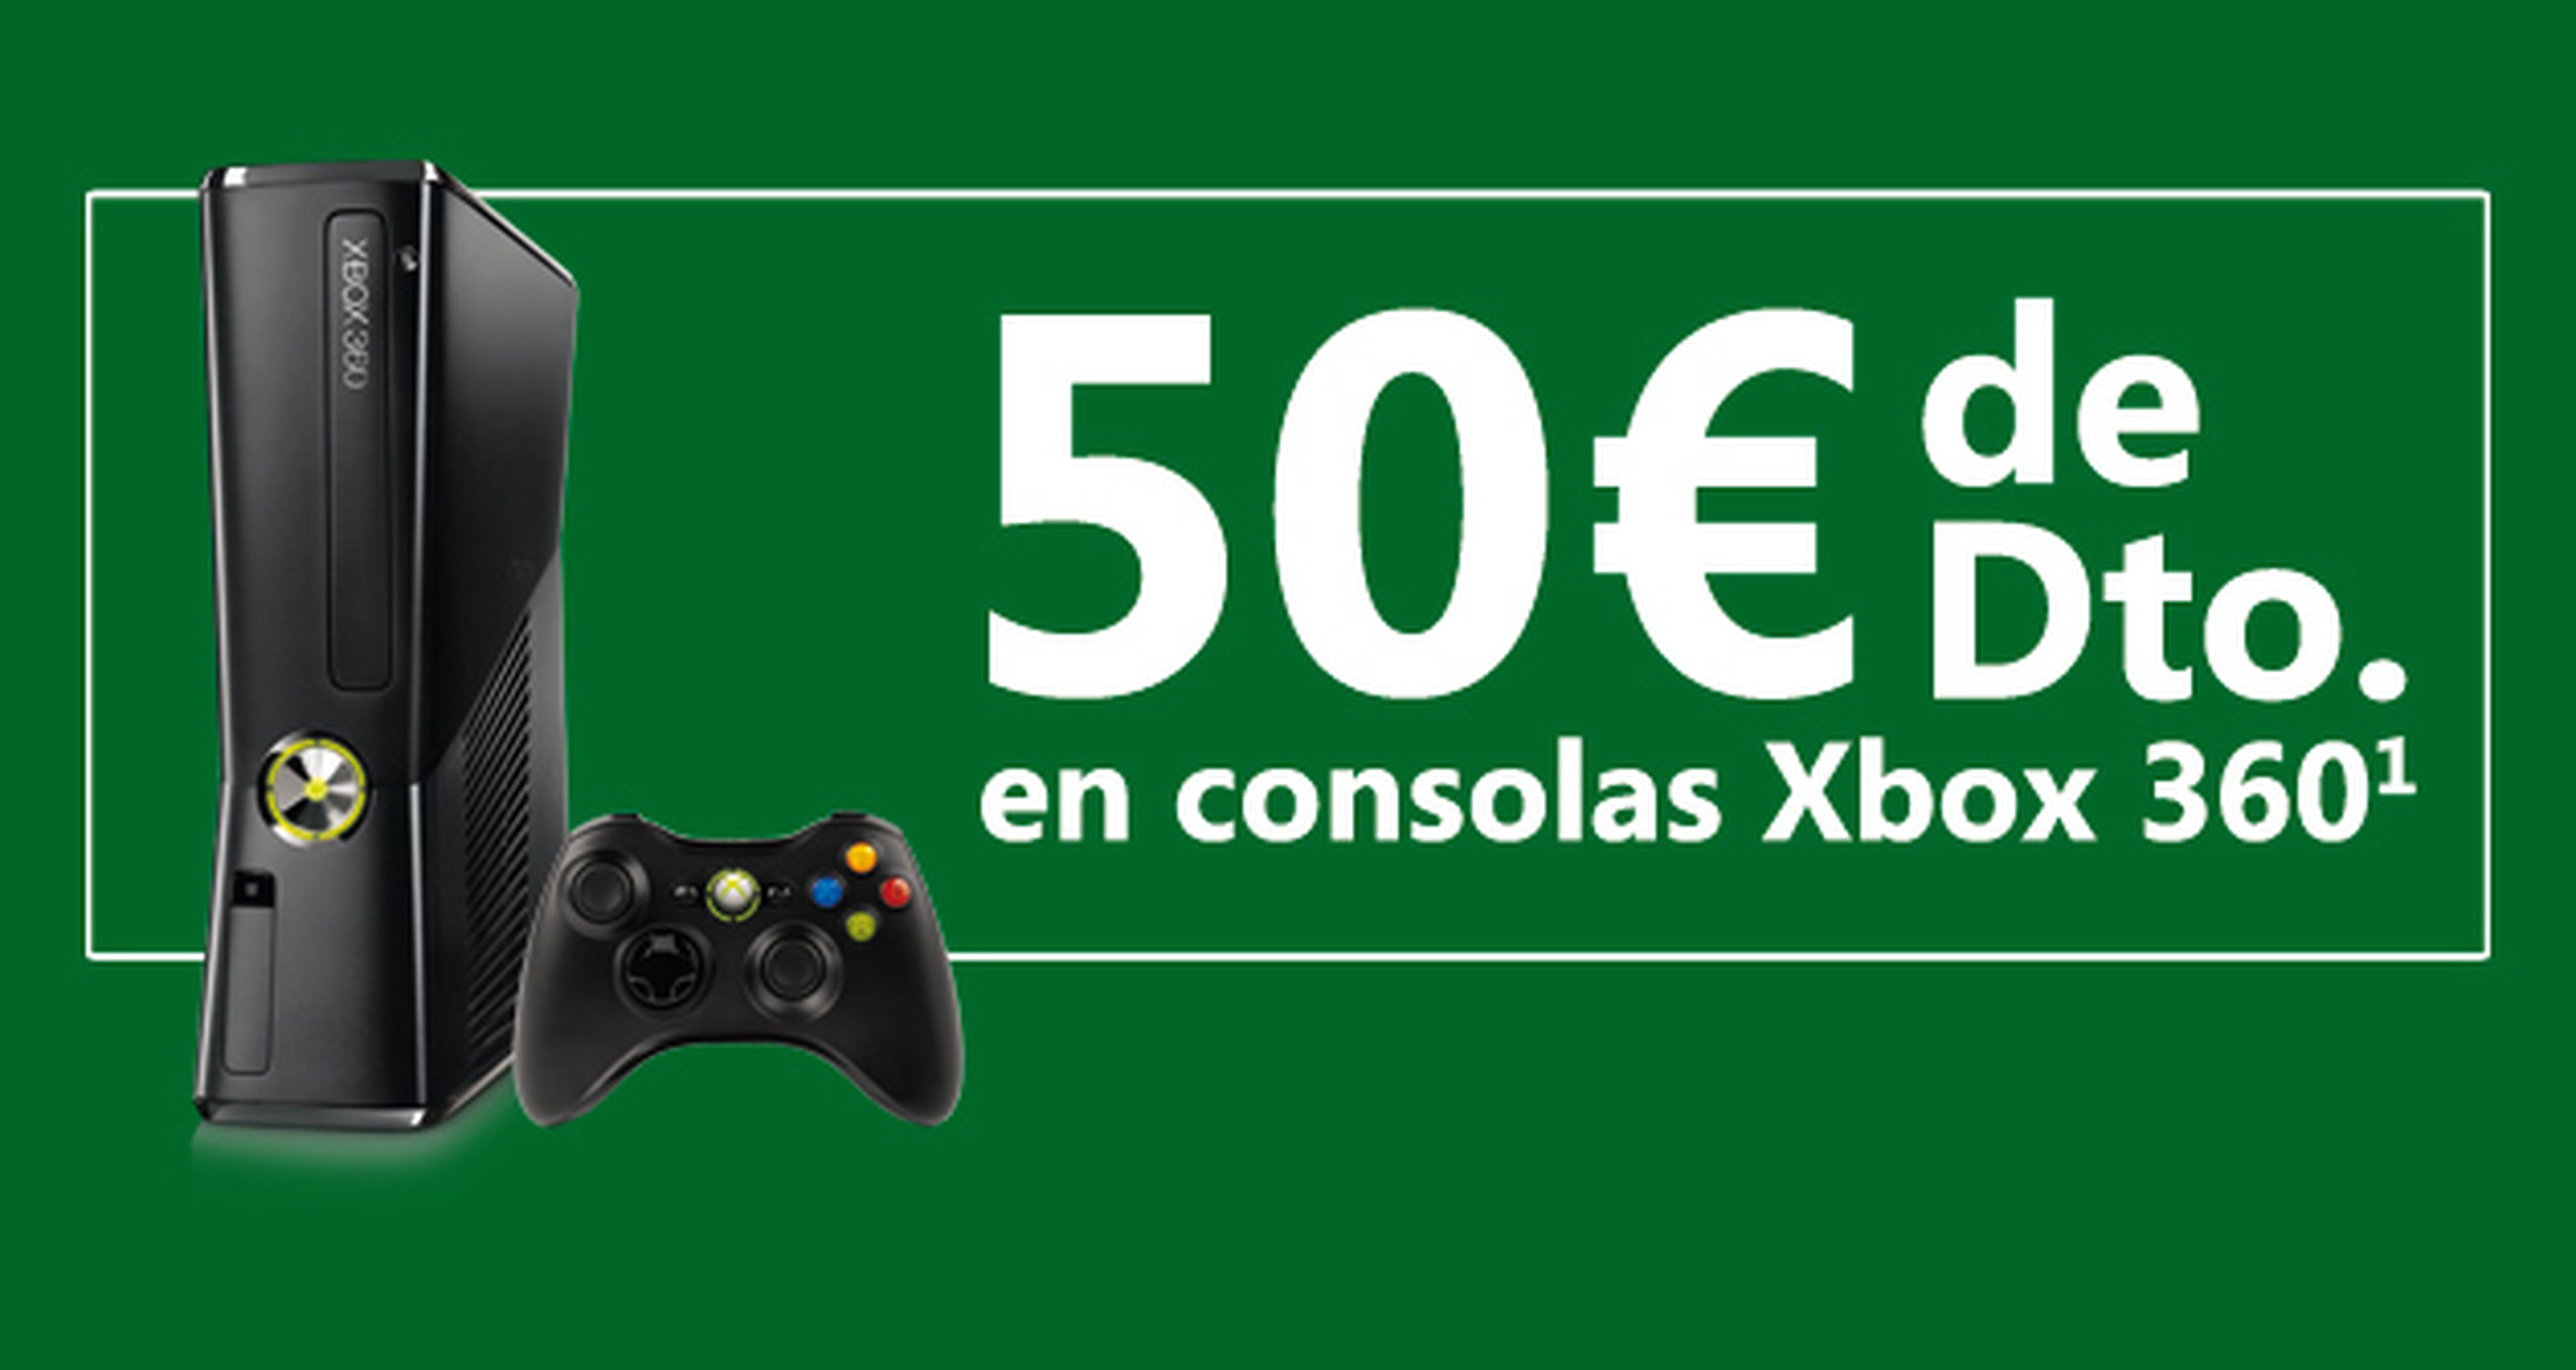 Microsoft rebaja 50€ el precio de Xbox 360 durante el verano